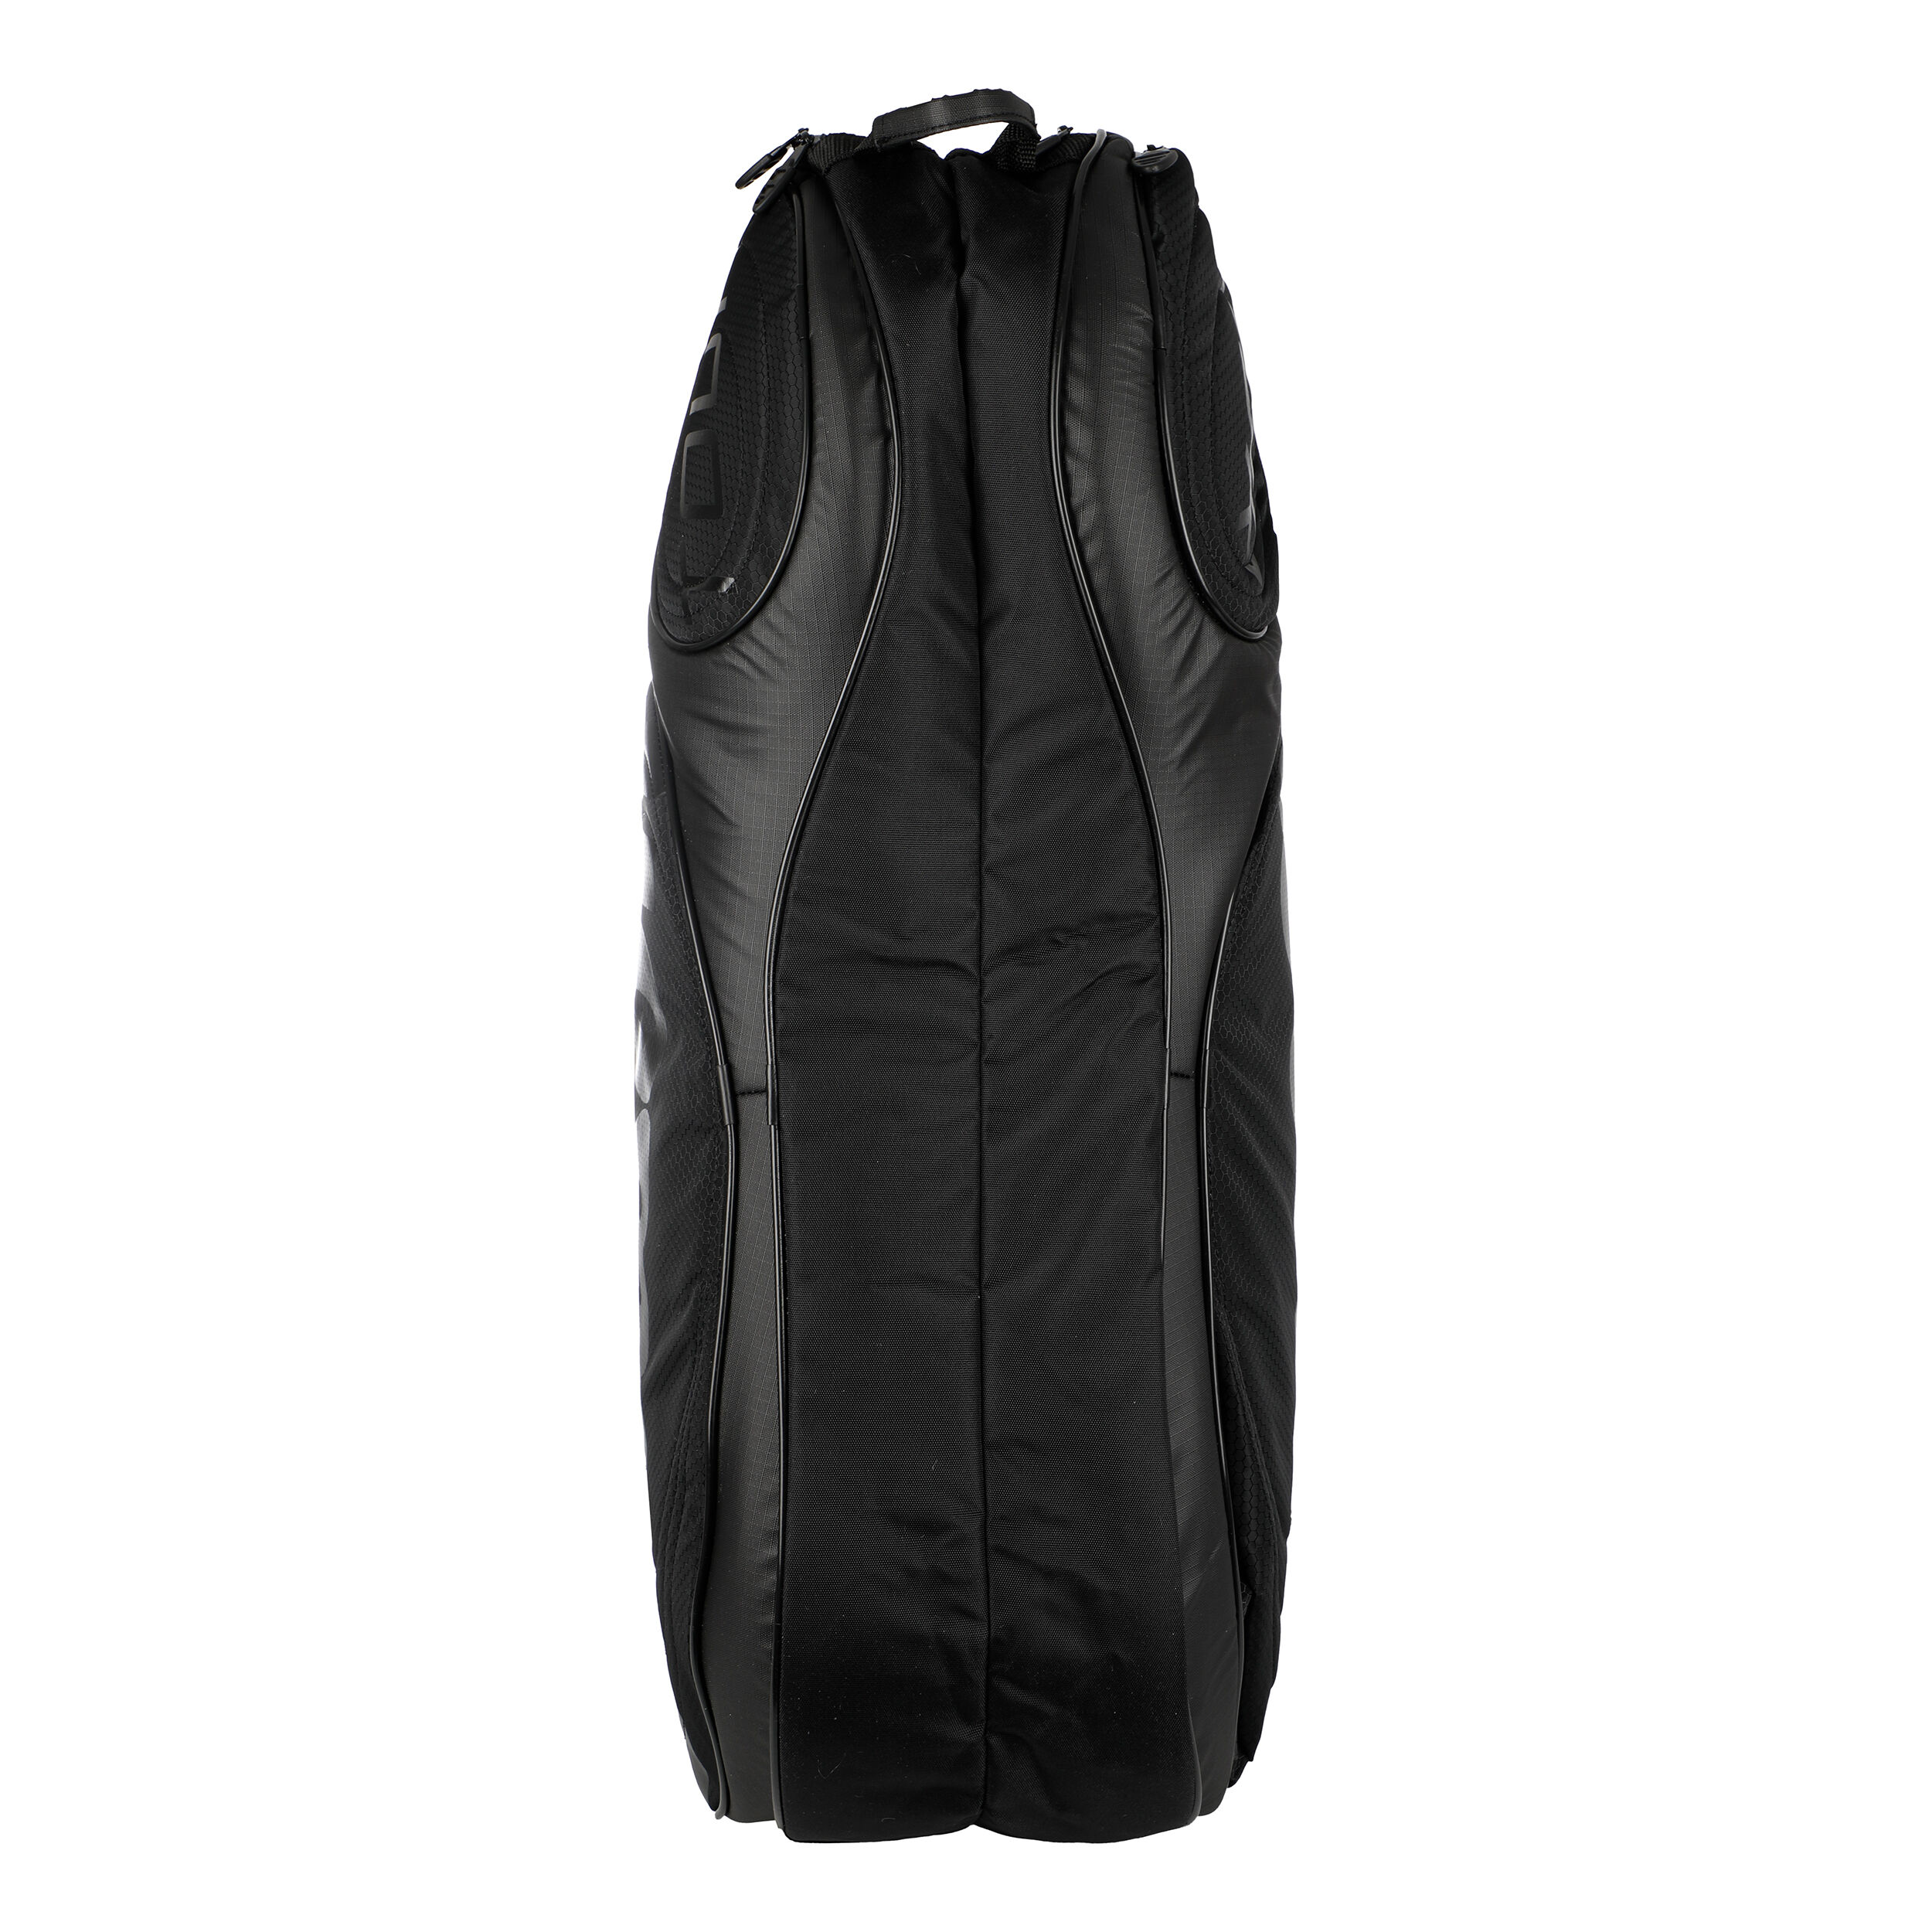 Camel Leather Convertible Backpack, Multifunctional Bag, Diaper Shoulder Bag  - Etsy